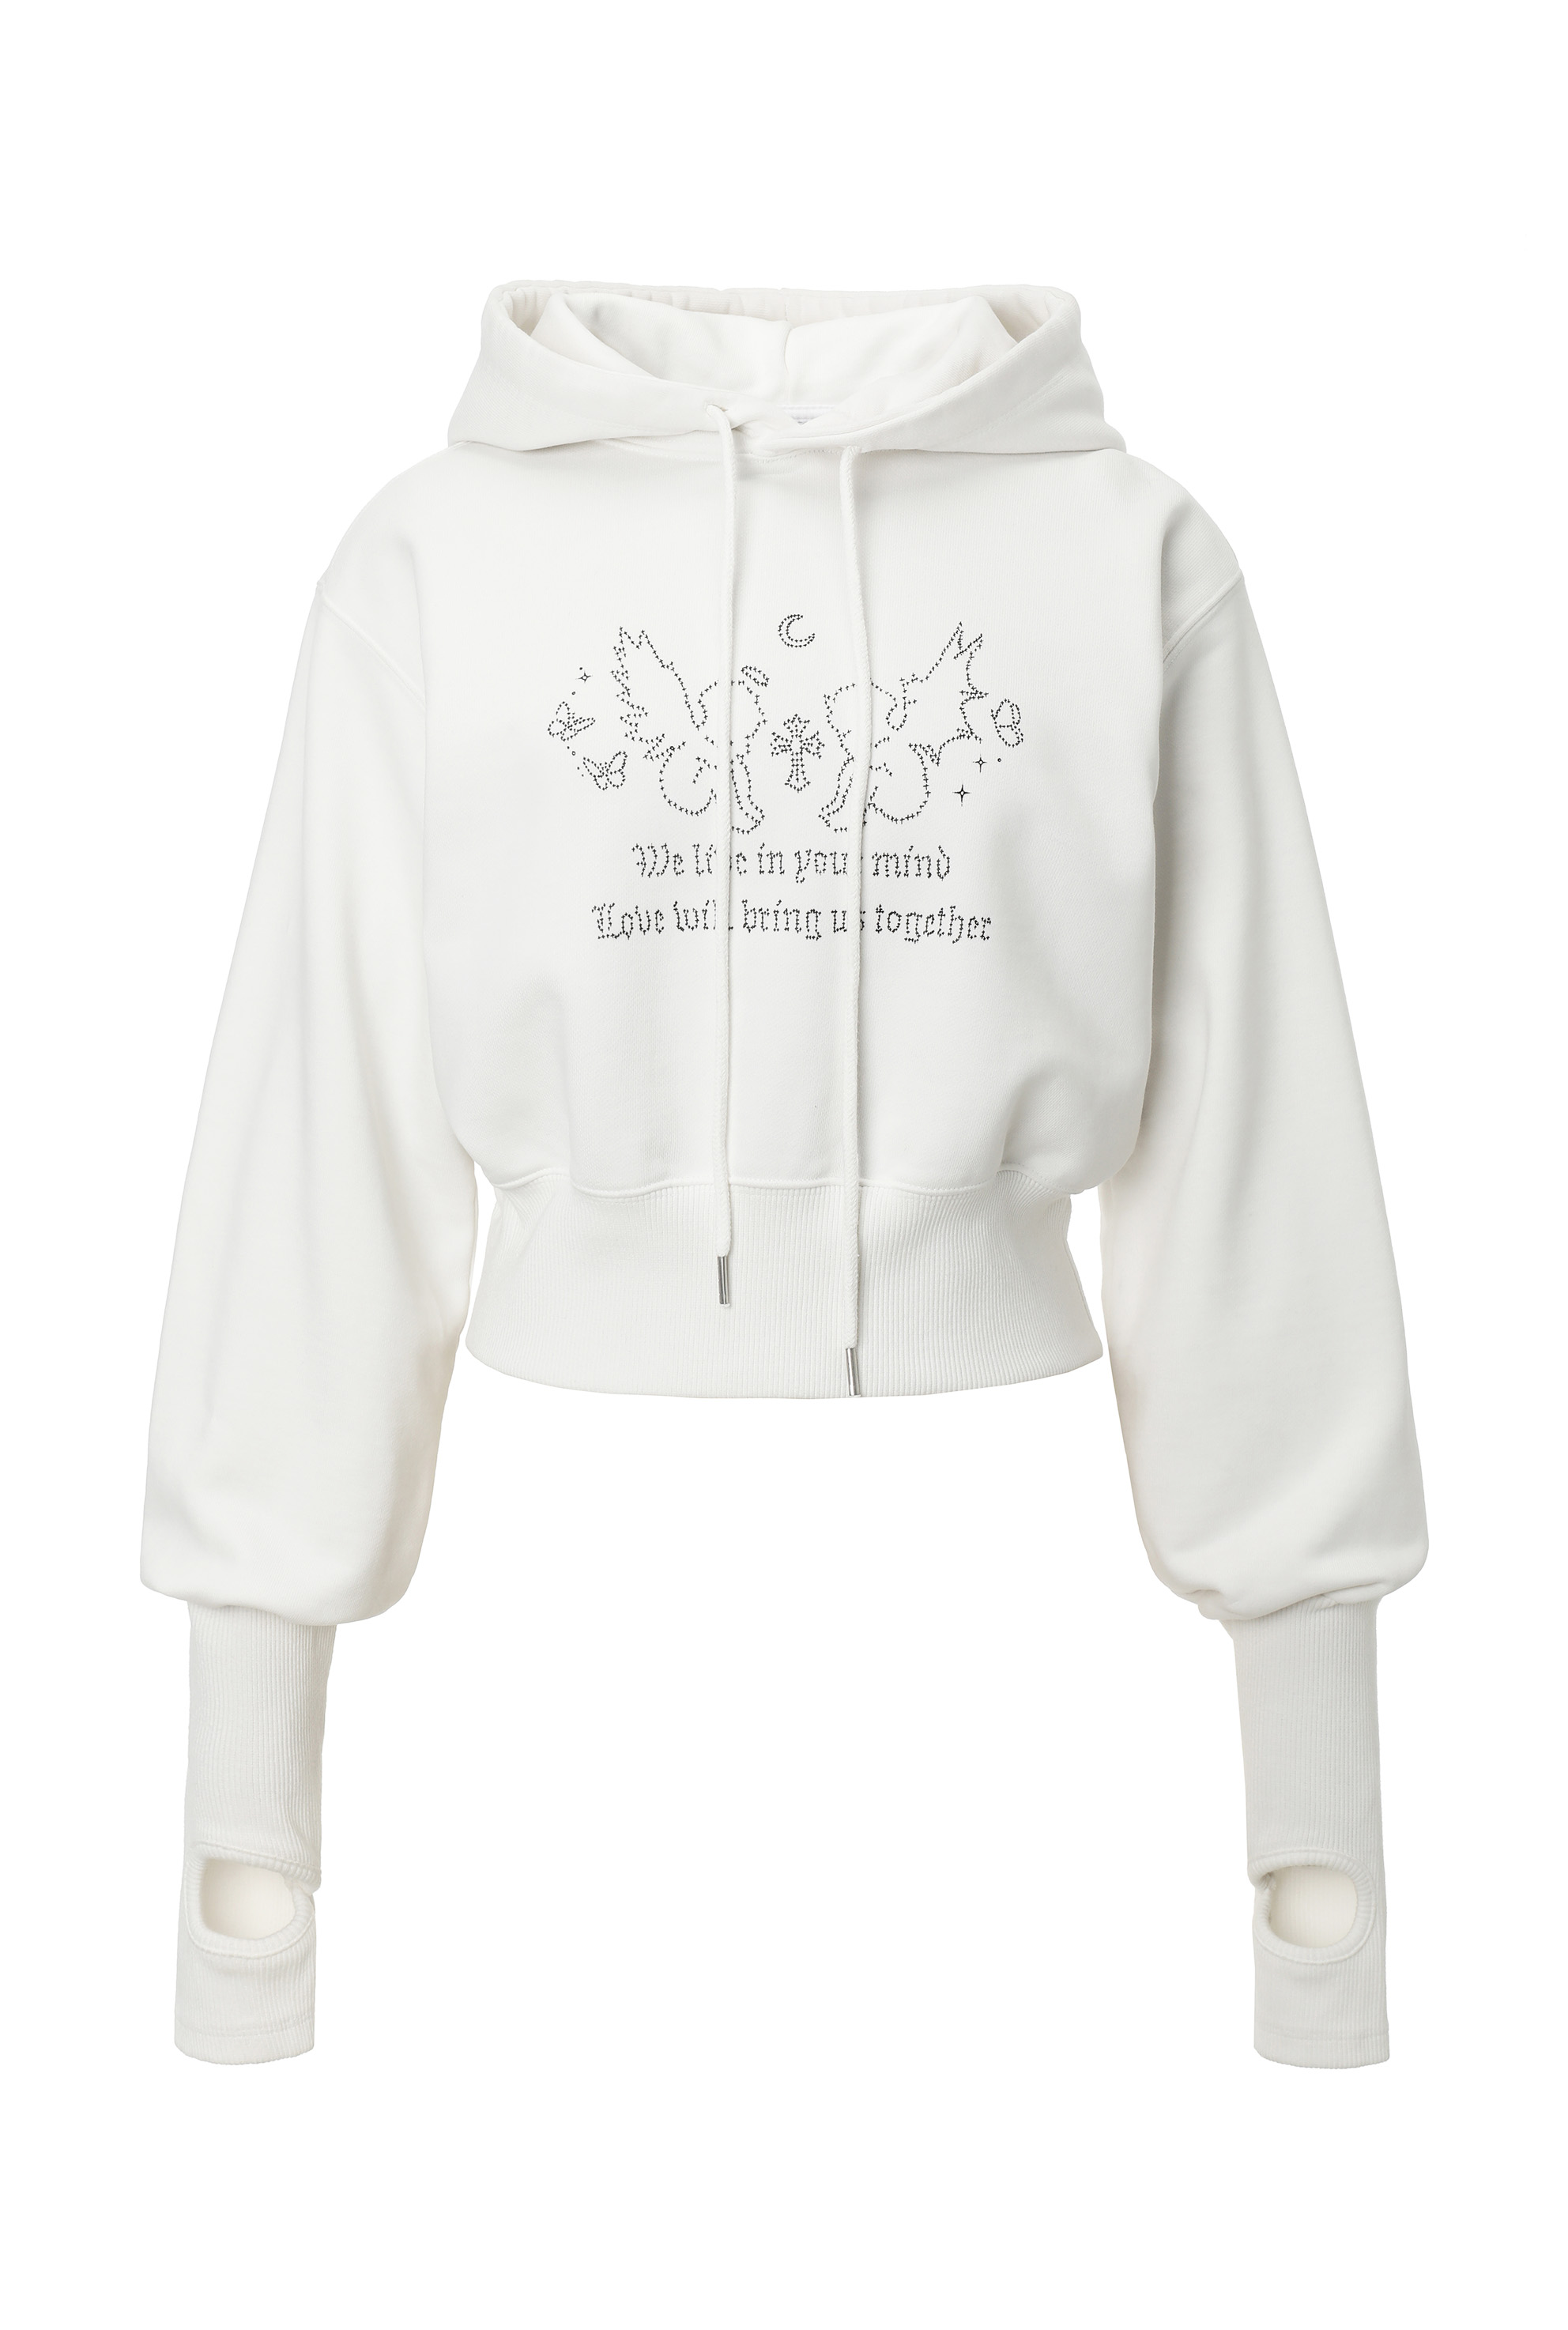 [2nd pre-order] Fairy hoodie